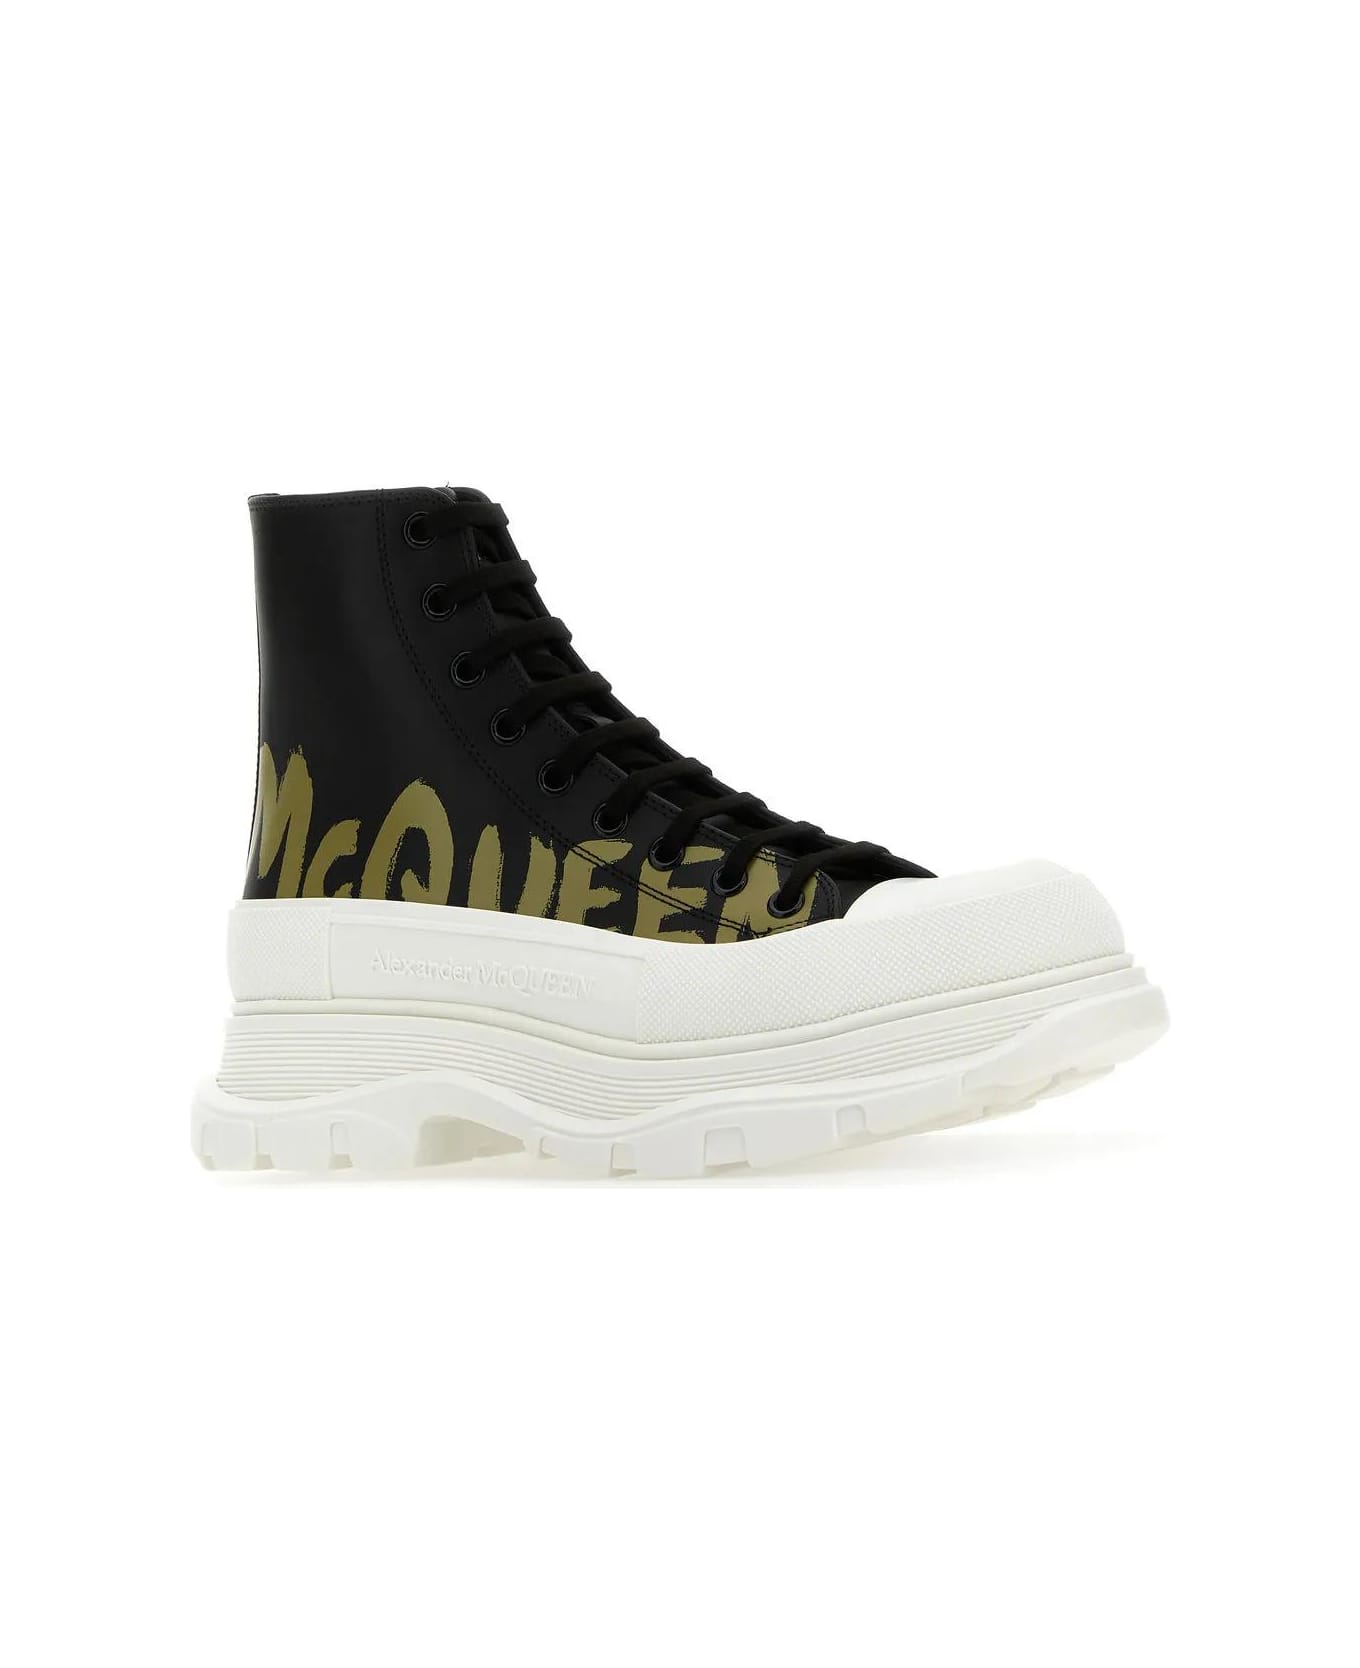 Alexander McQueen Black Leather Tread Slick Sneakers - Black